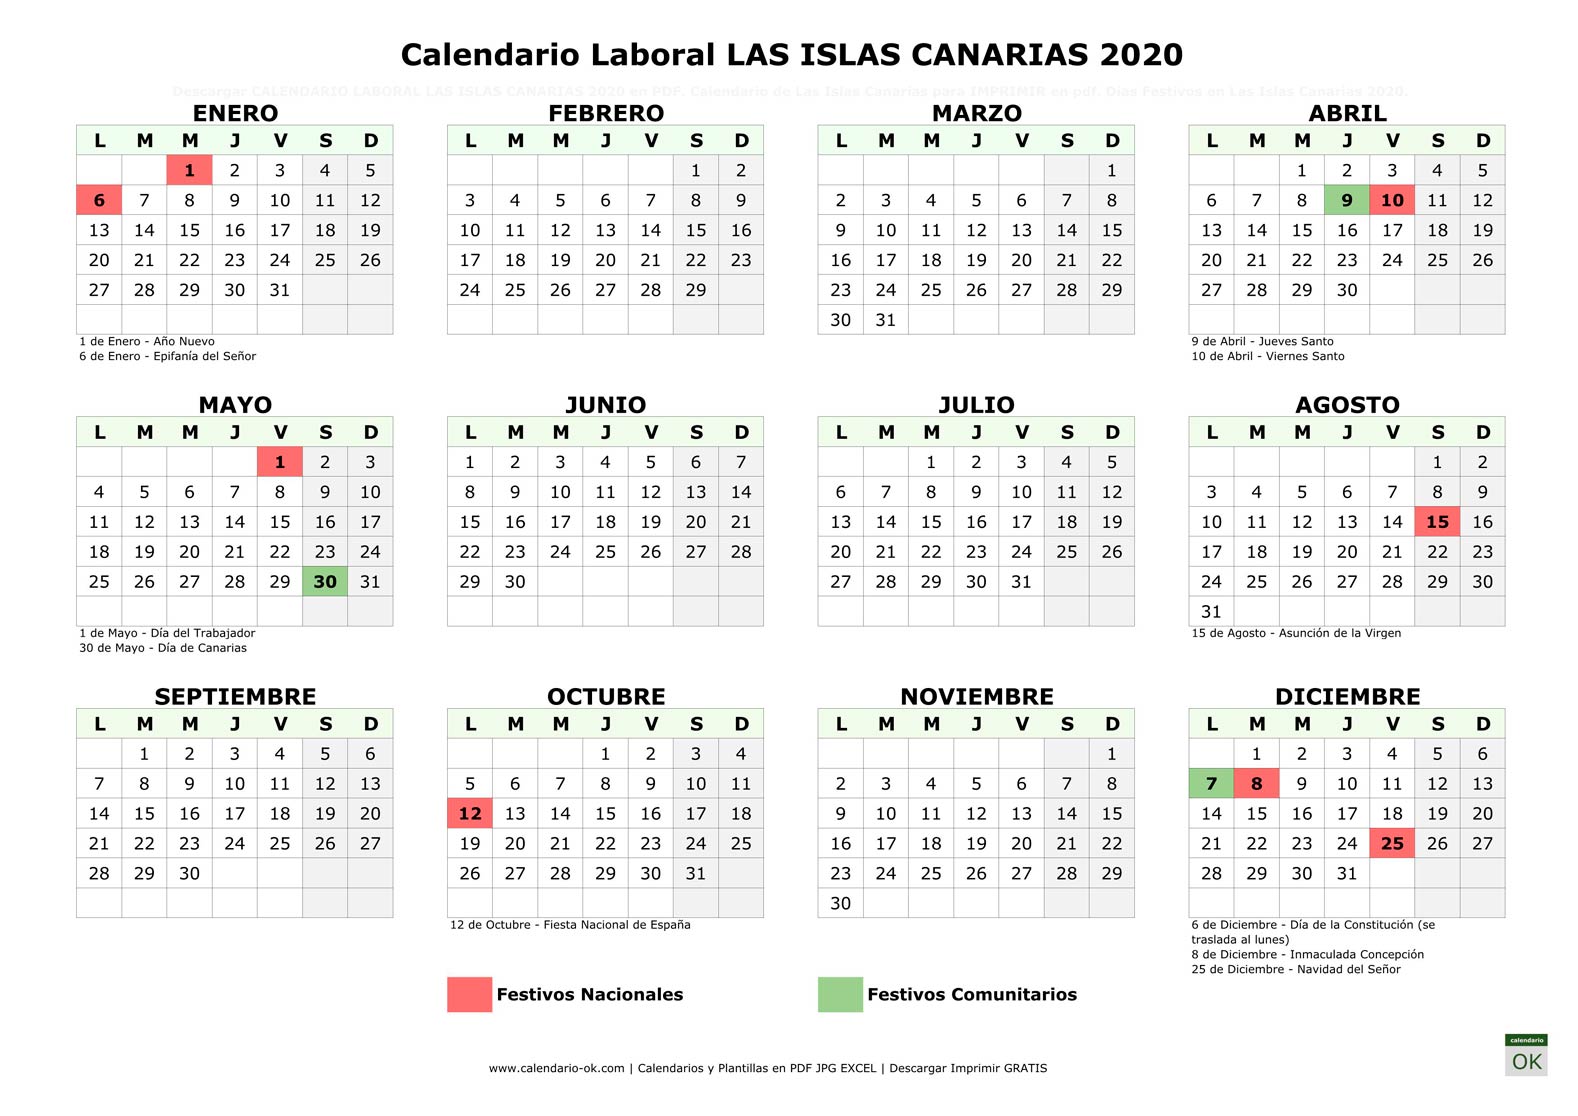 Calendario Laboral LAS ISLAS CANARIAS 2020 horizontal